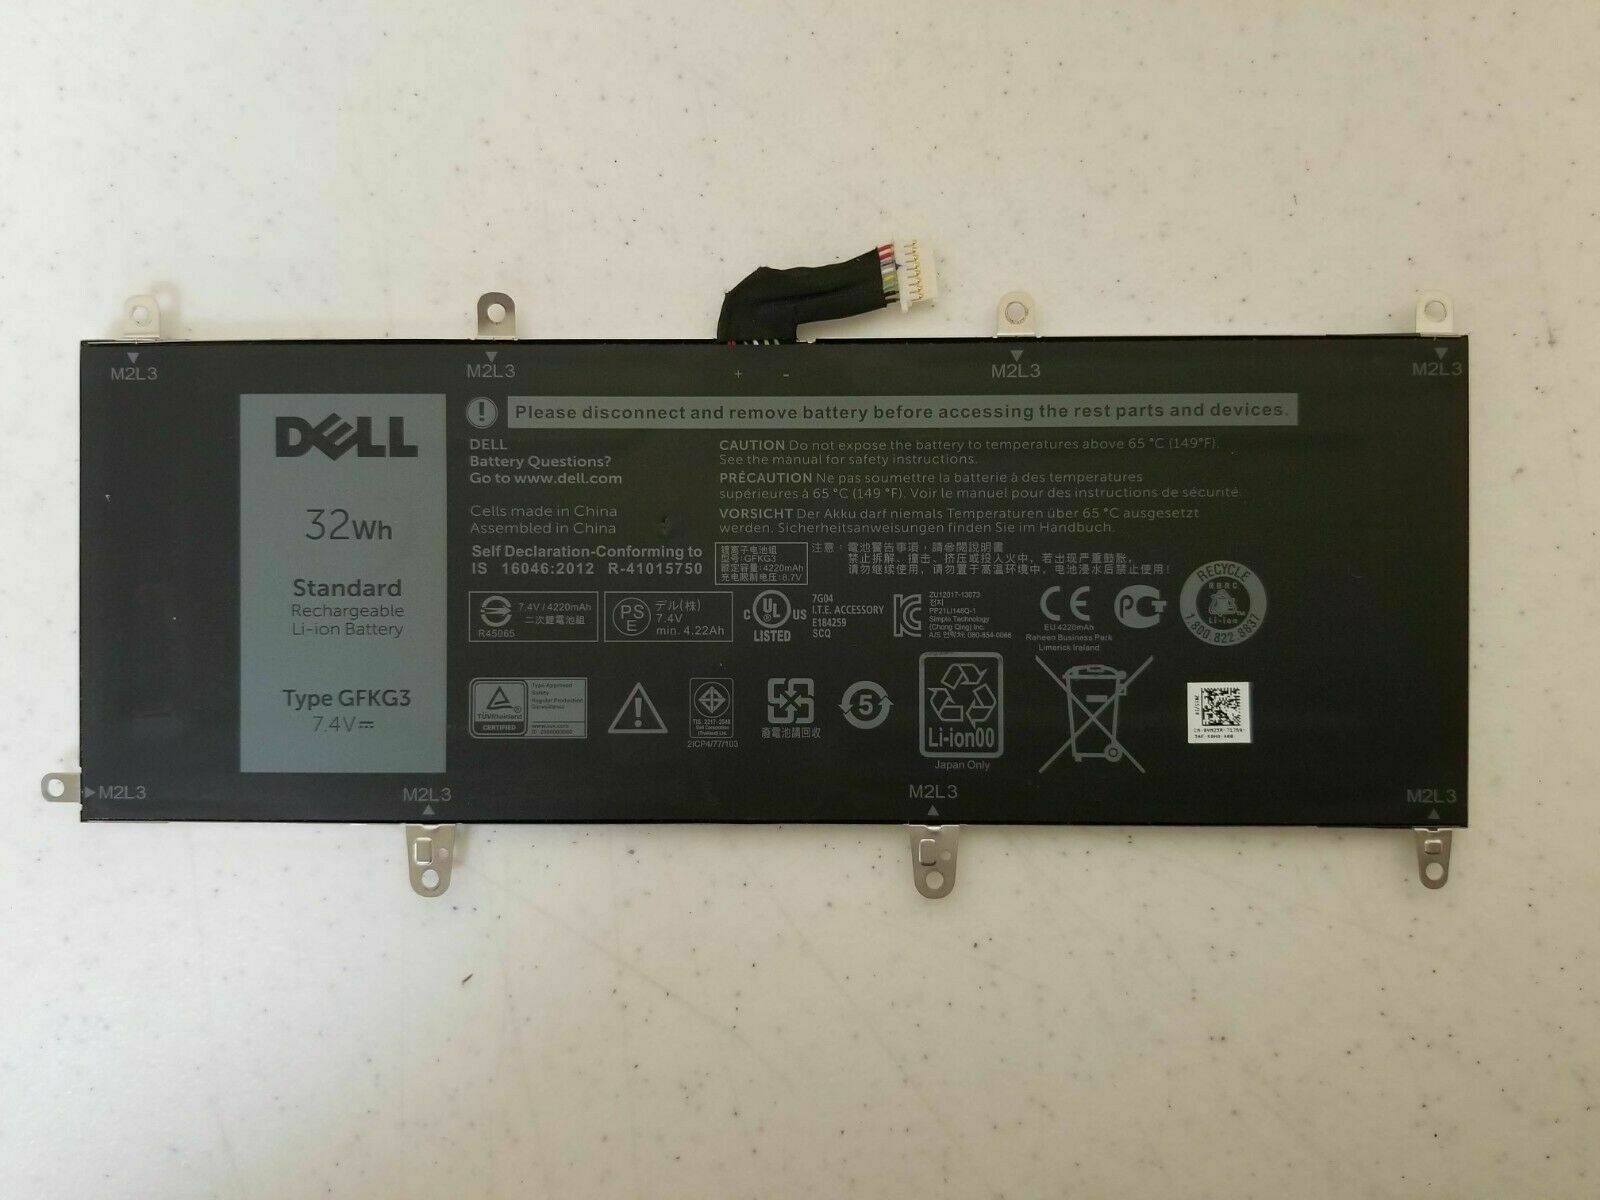 Dell GFKG3 VN25R Laptop Battery For Dell Venue 10 Pro 50560, Venue 10 Pro 5056